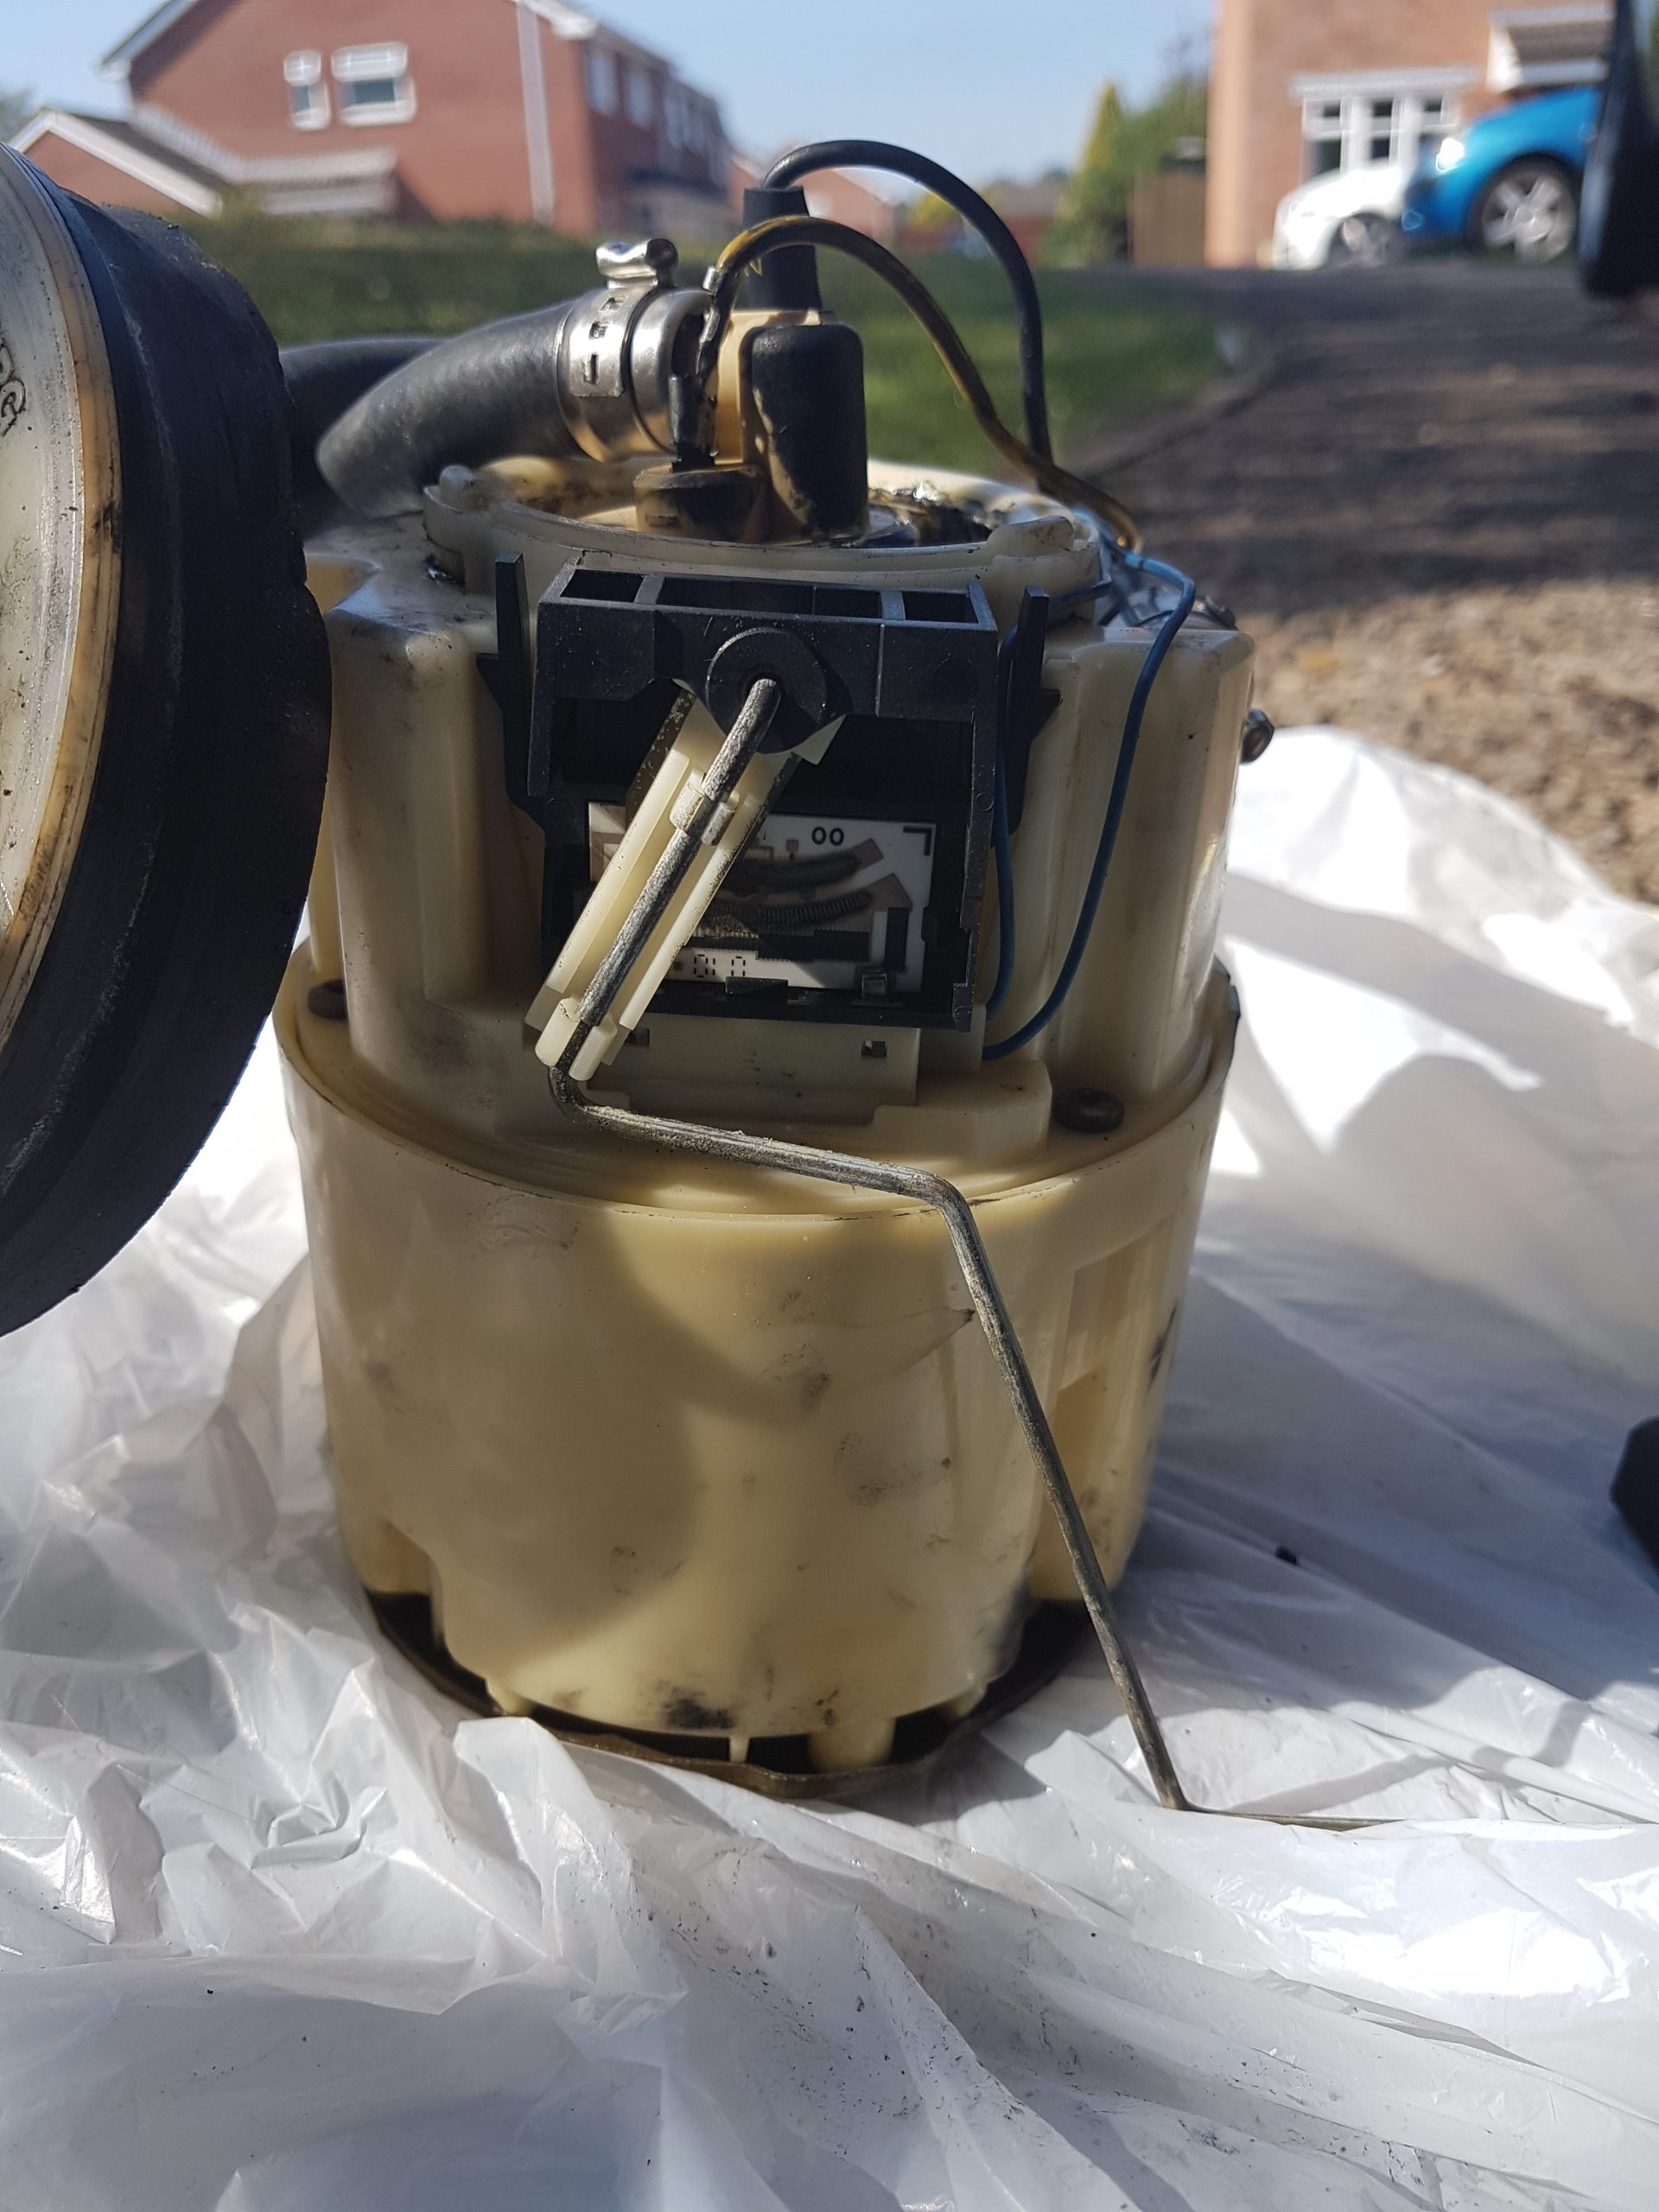 Corrado: Replacing the Fuel Pump